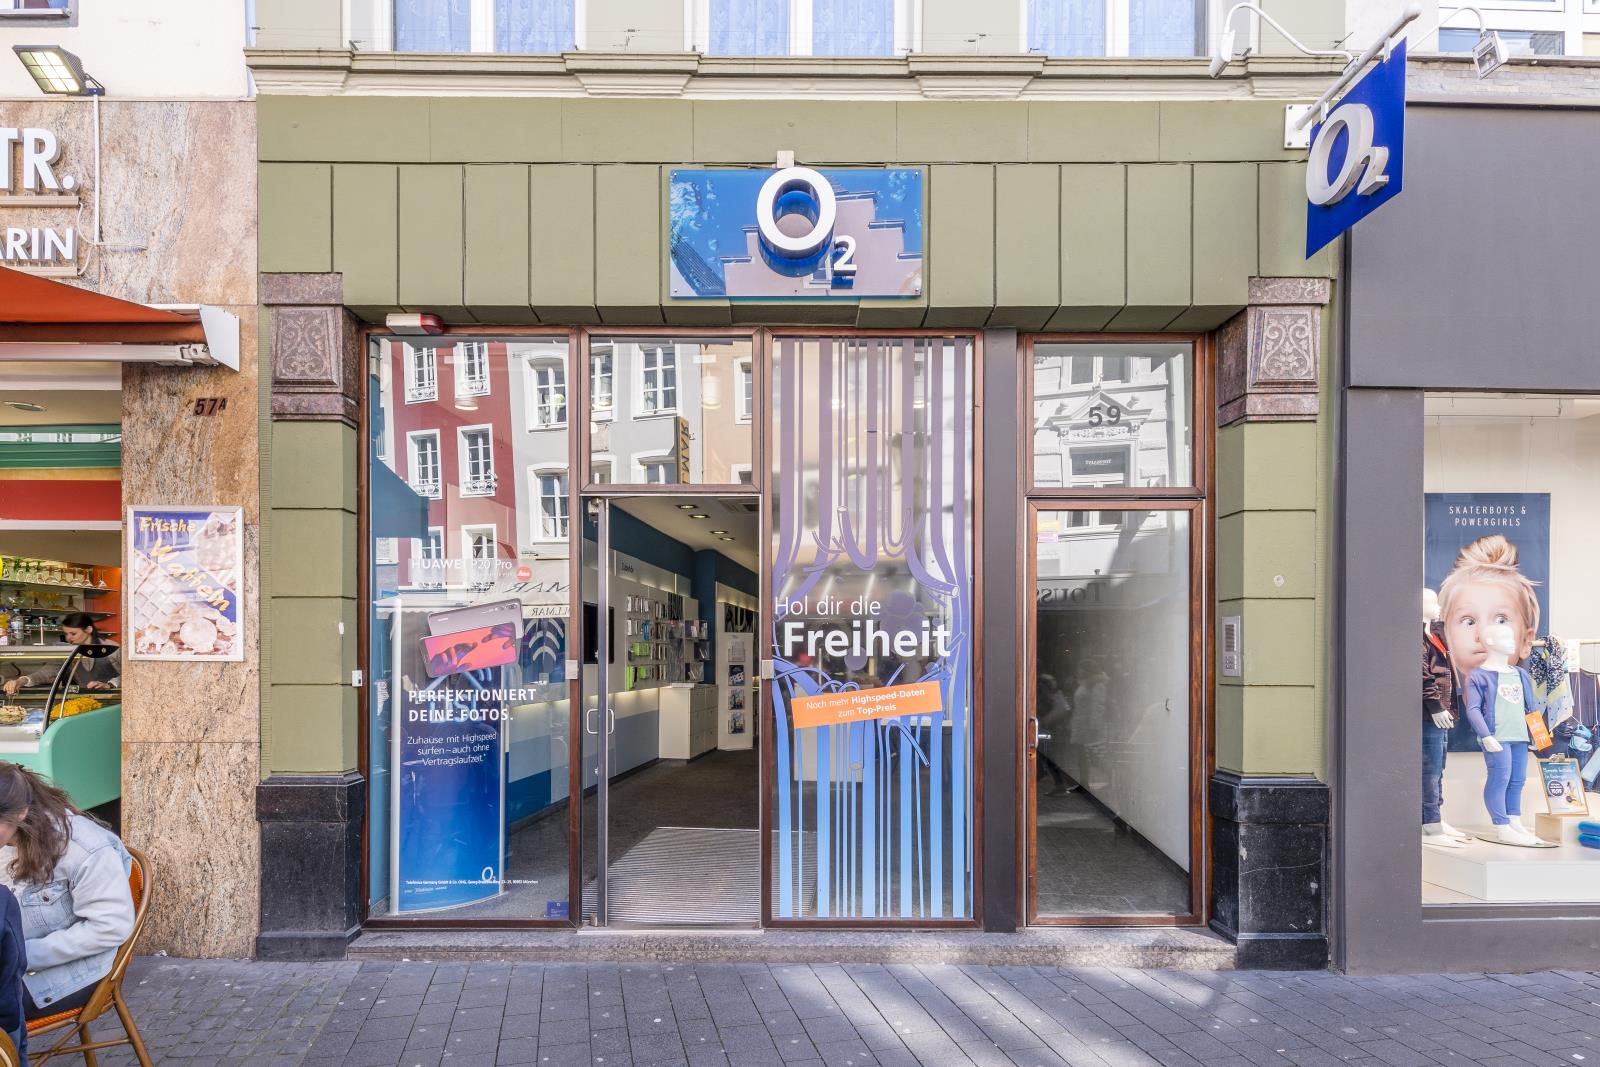 o2 Shop, Sternstr. 59 in Bonn